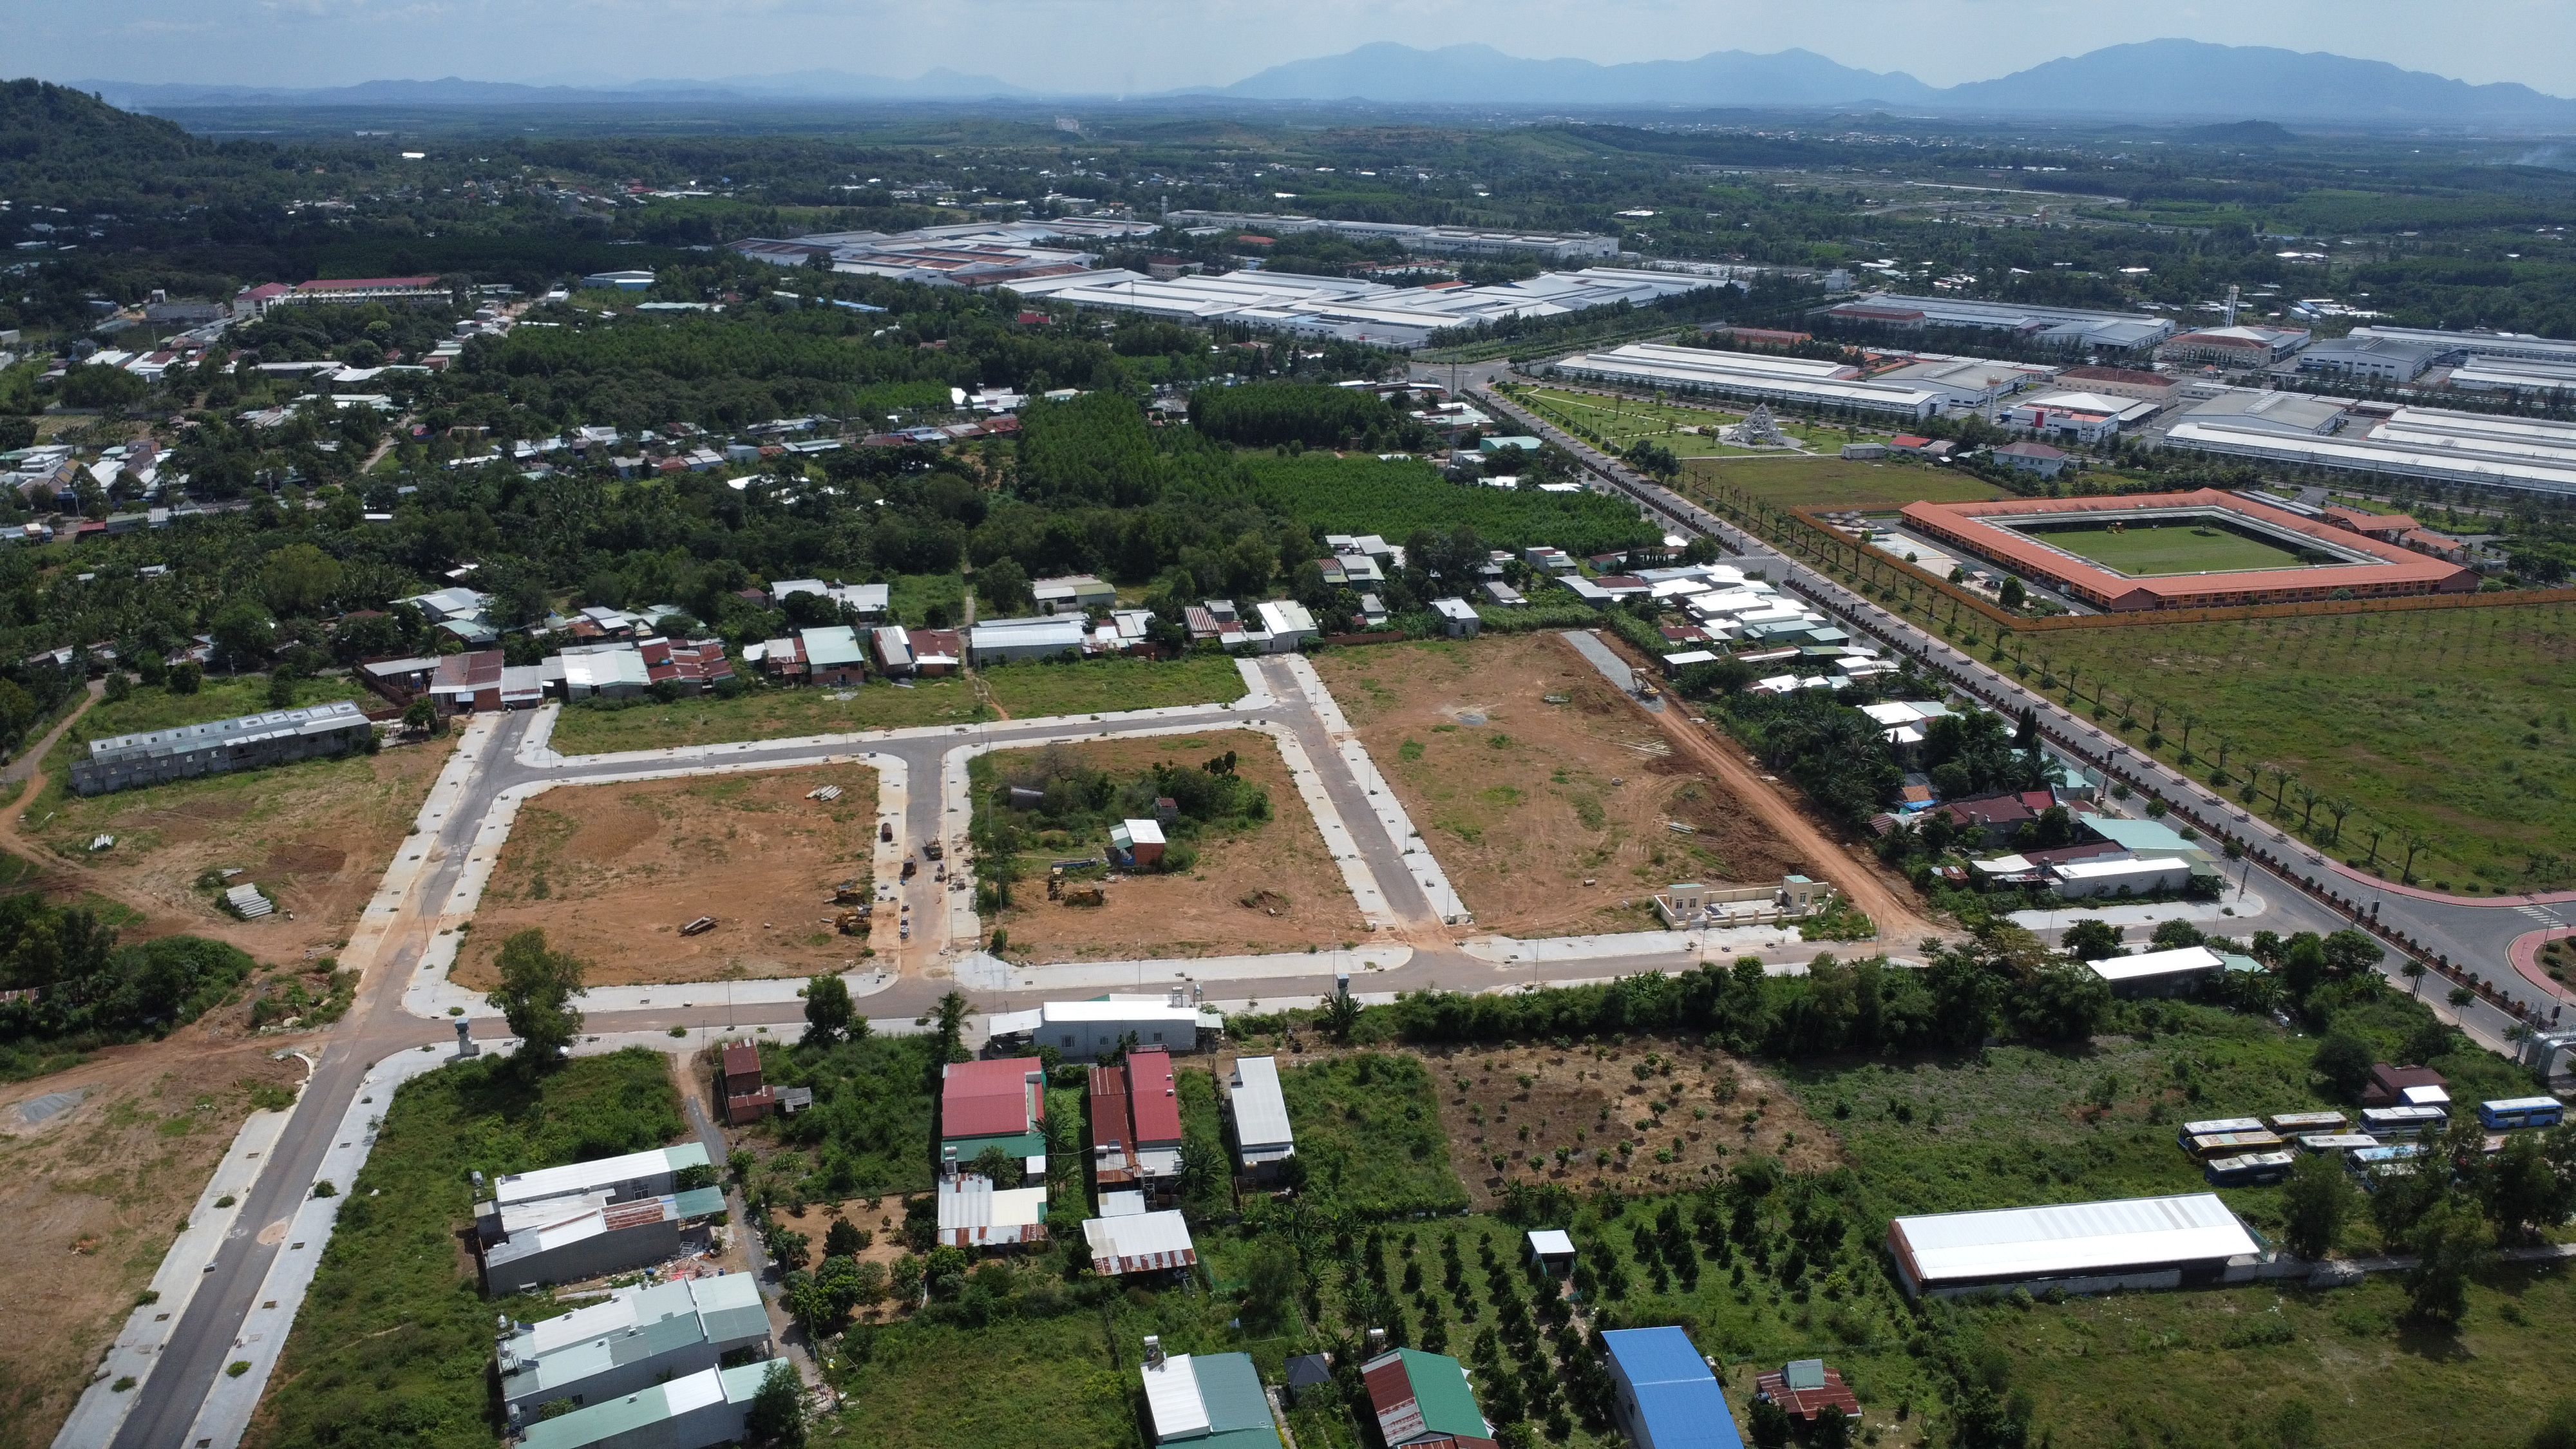 Khu tái định cư cho Dự án đường cao tốc Phan Thiết - Dầu Giây tại huyện Xuân Lộc đến nay vẫn chưa xong, người dân vẫn chưa được giao đất tái định cư. Ảnh: HÀ ANH CHIẾN